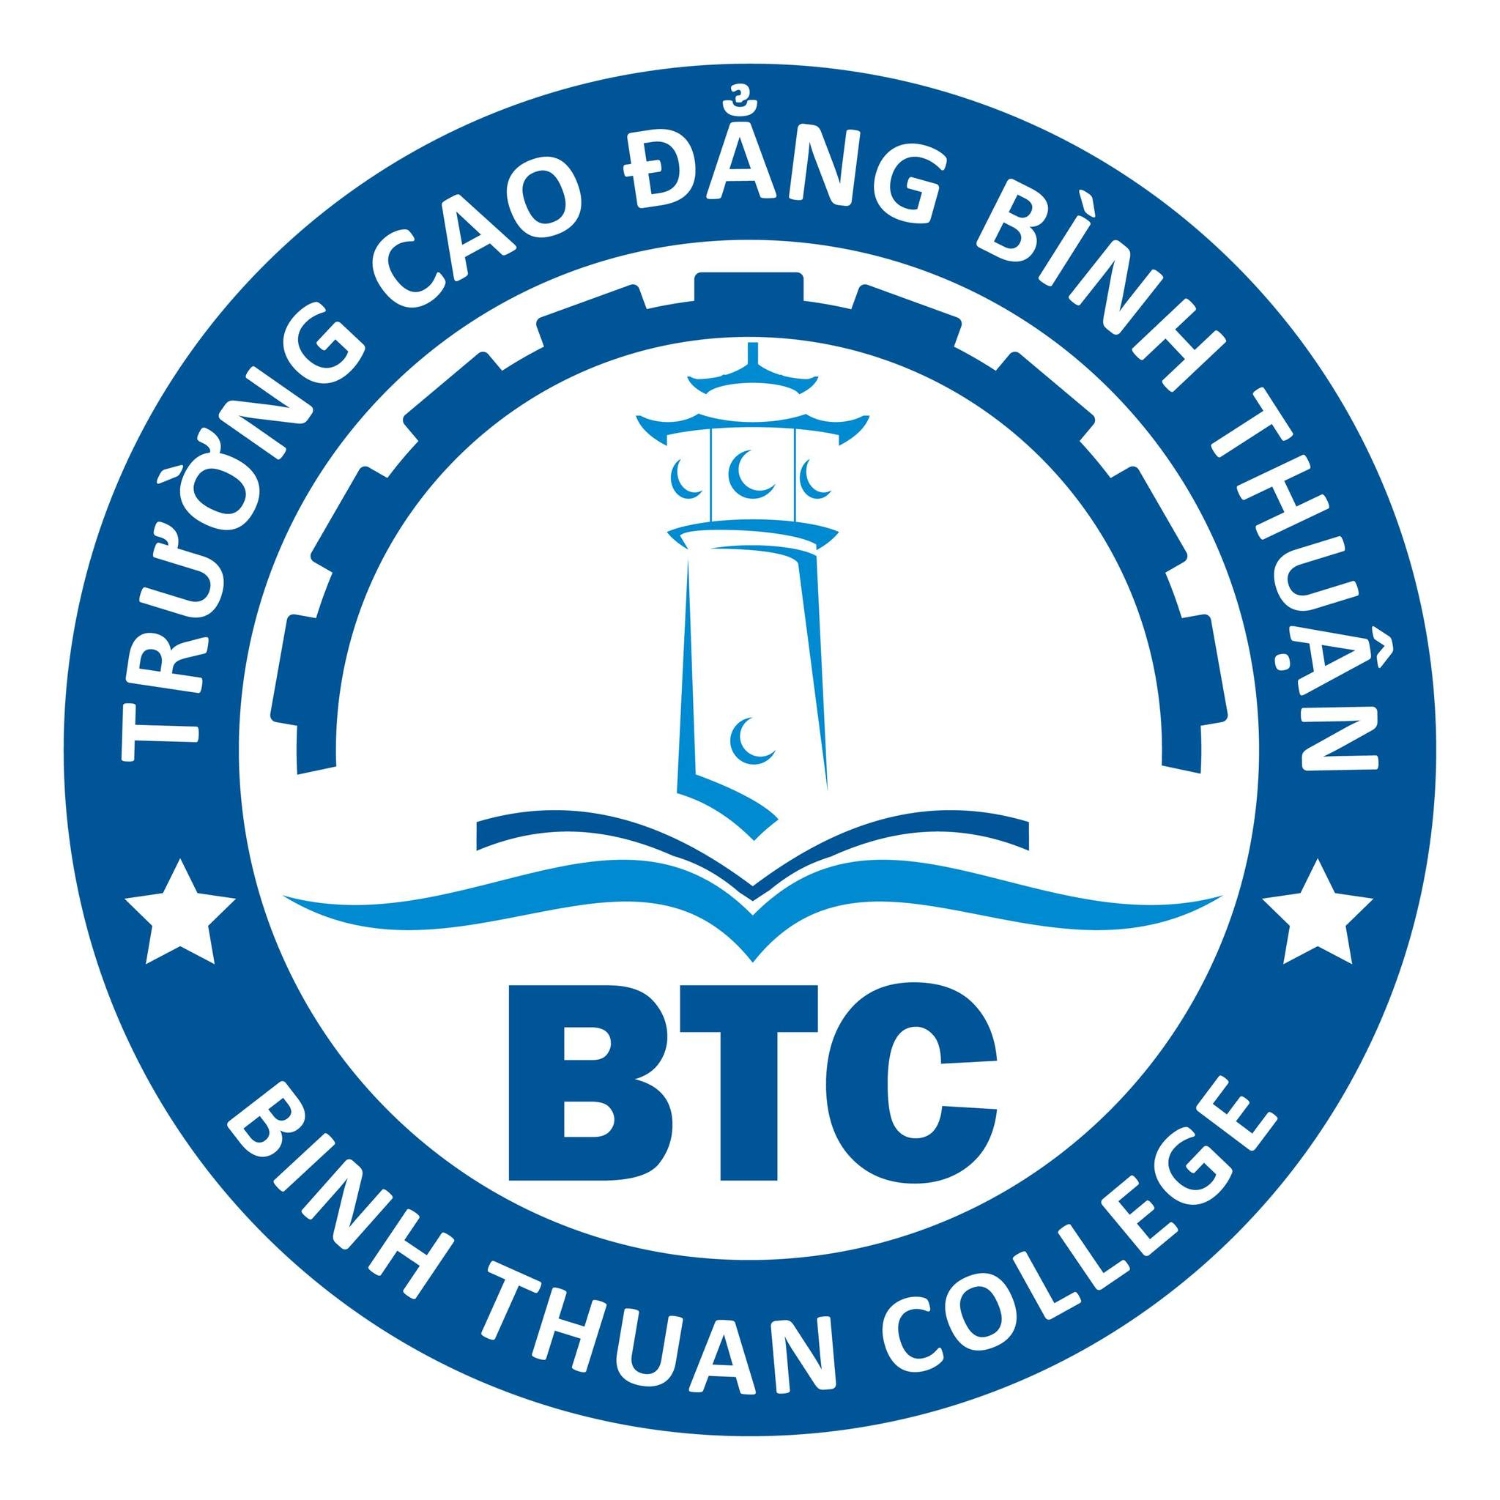 Trường Cao đẳng Bình Thuận